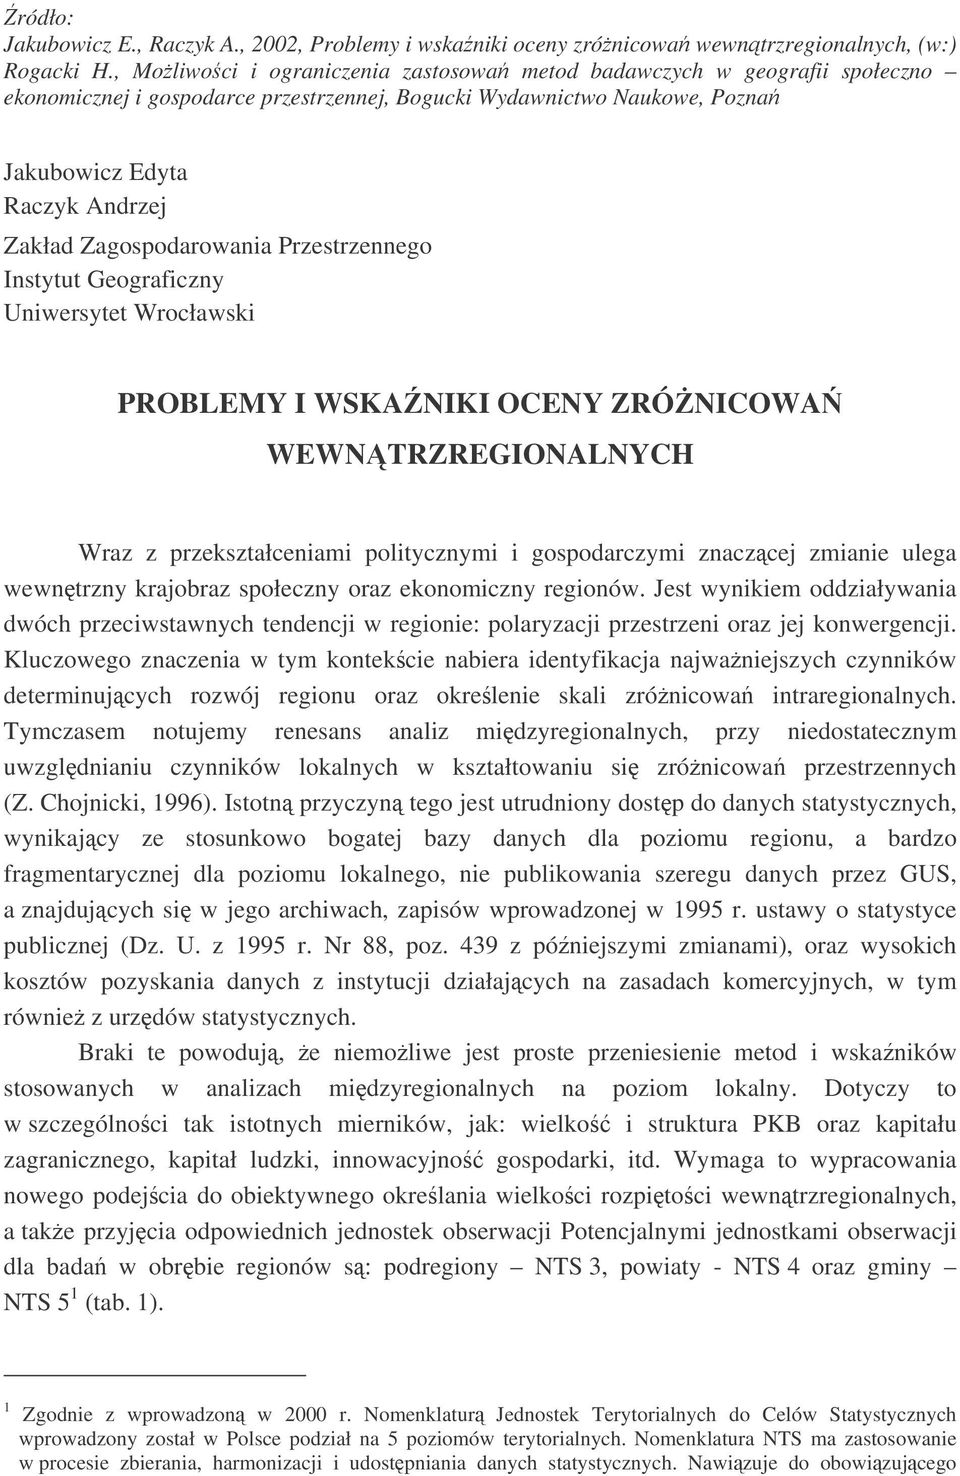 Zagospodarowania Przestrzennego Instytut Geograficzny Uniwersytet Wrocławski PROBLEMY I WSKANIKI OCENY ZRÓNICOWA WEWNTRZREGIONALNYCH Wraz z przekształceniami politycznymi i gospodarczymi znaczcej